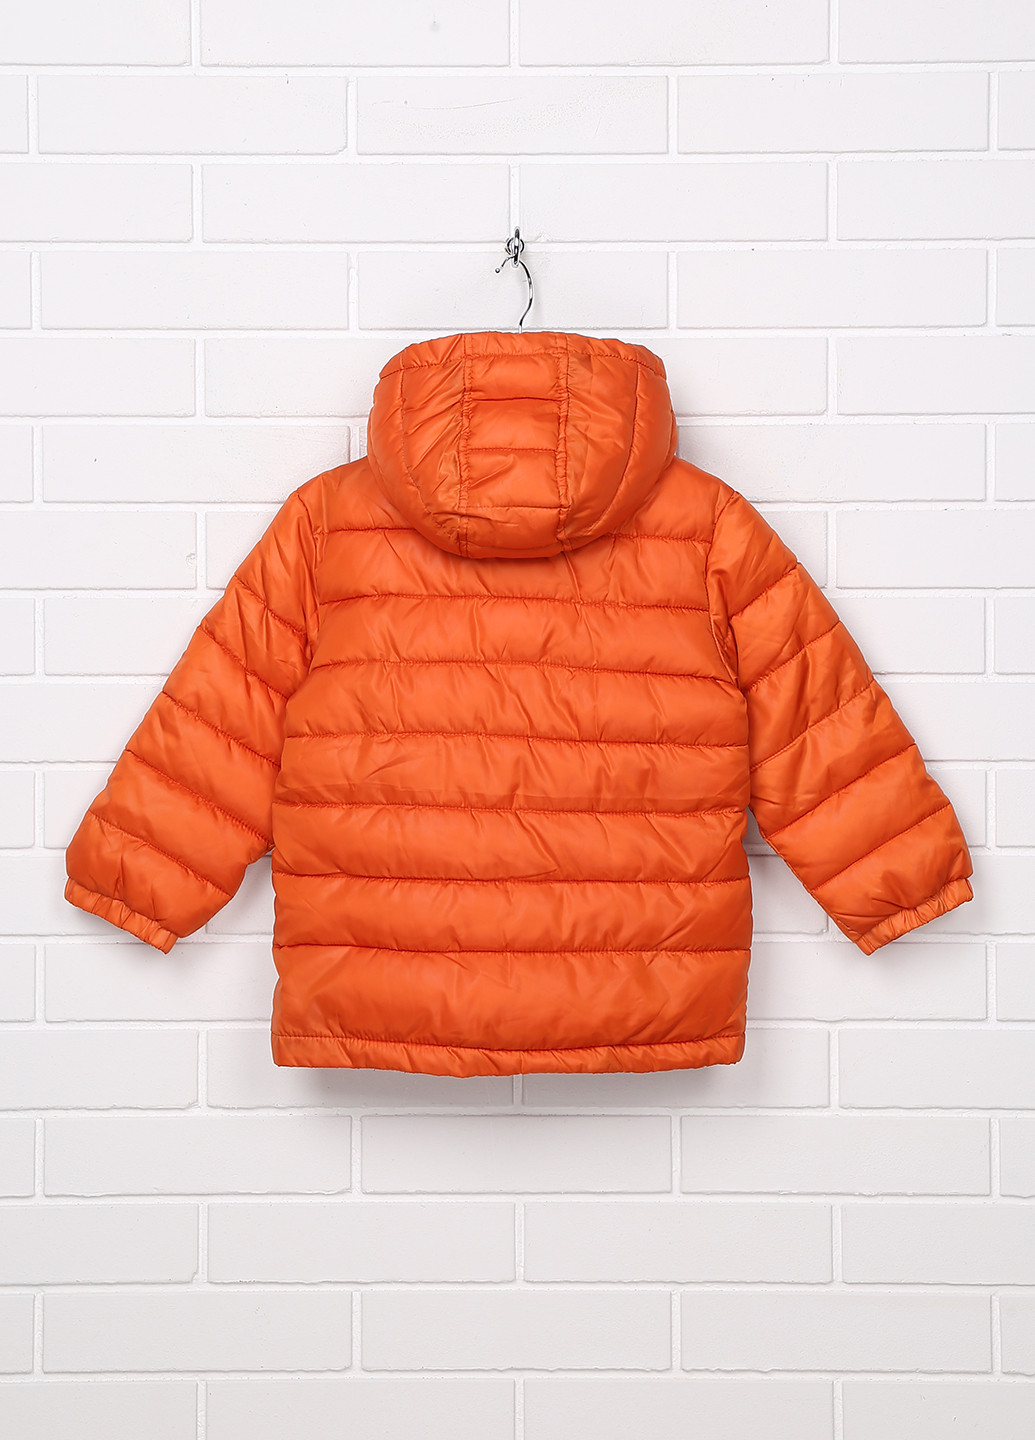 Оранжевая демисезонная куртка Crazy 8